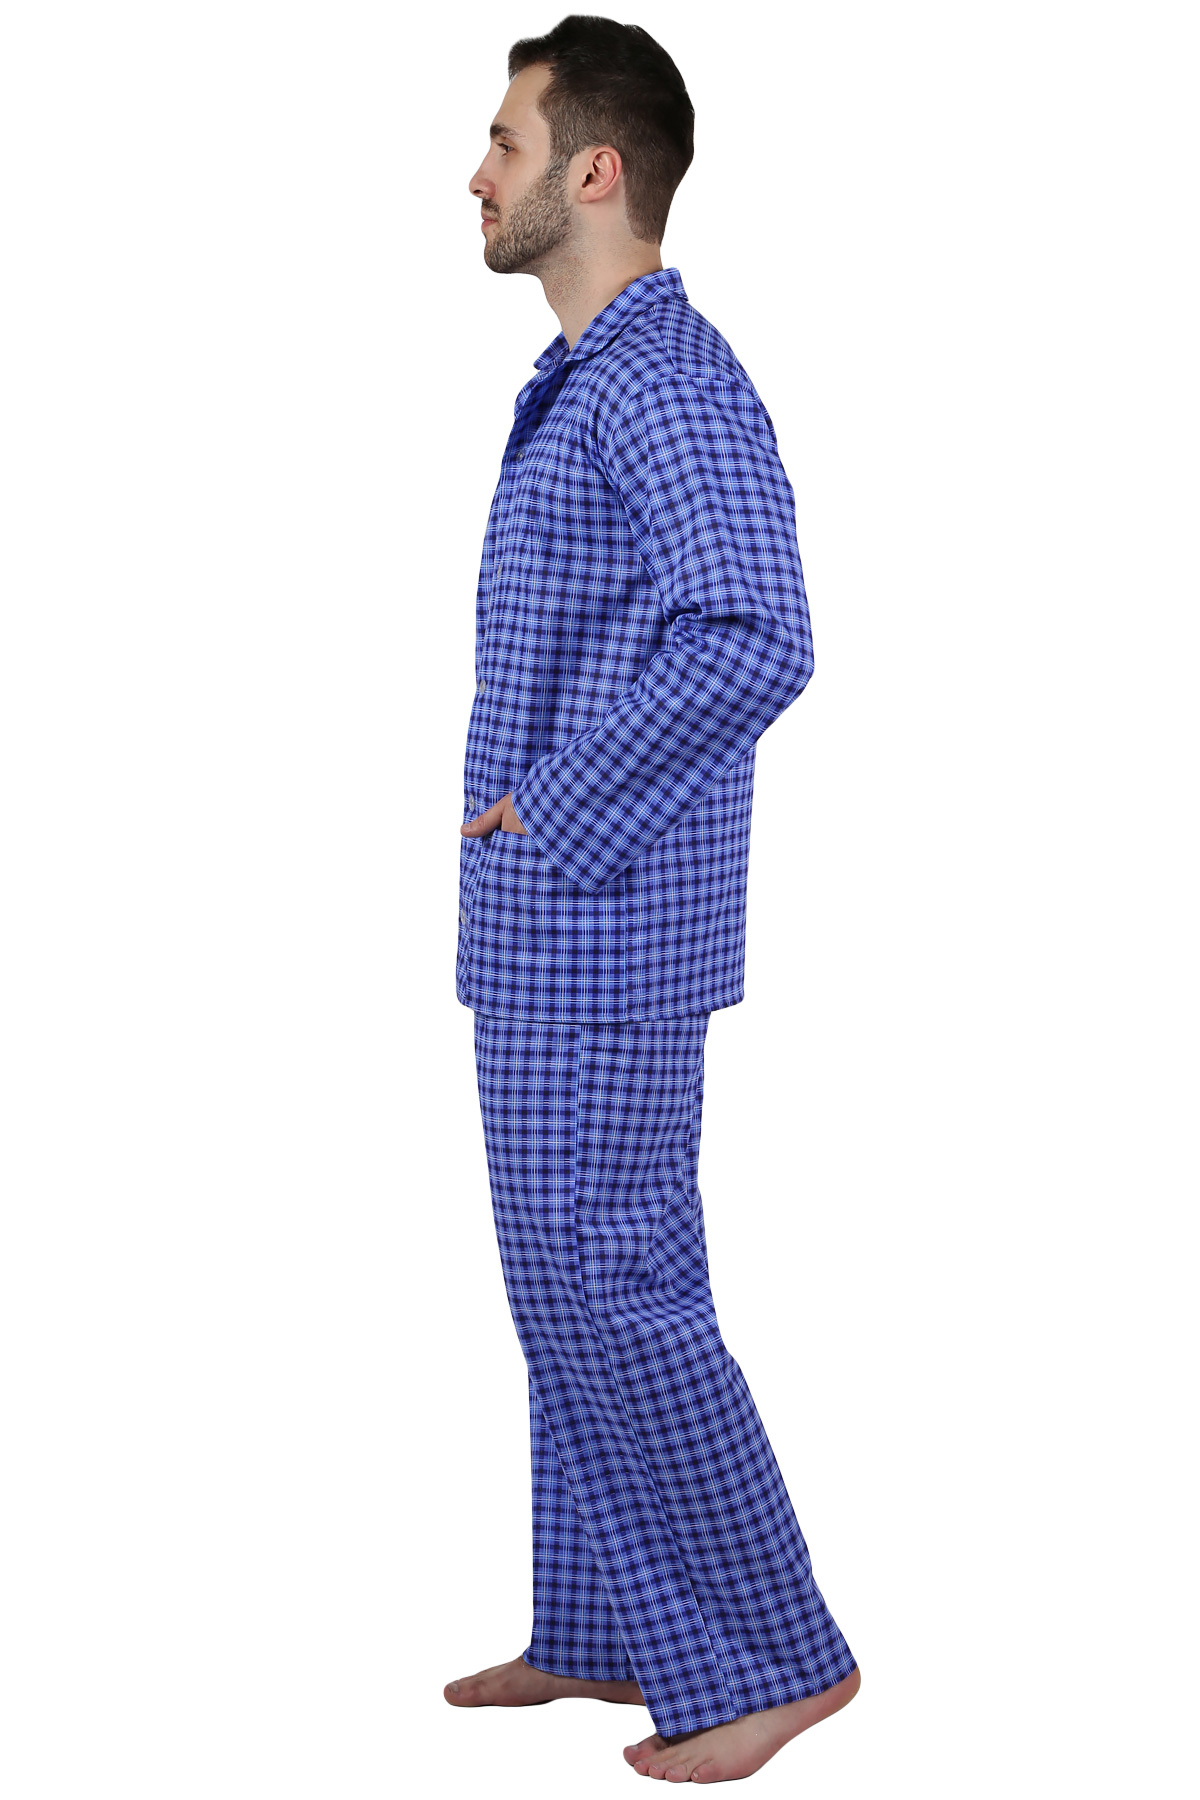 Муж. пижама арт. 22-0210 В ассортименте р. 52 Оптима трикотаж, размер 52 - фото 2